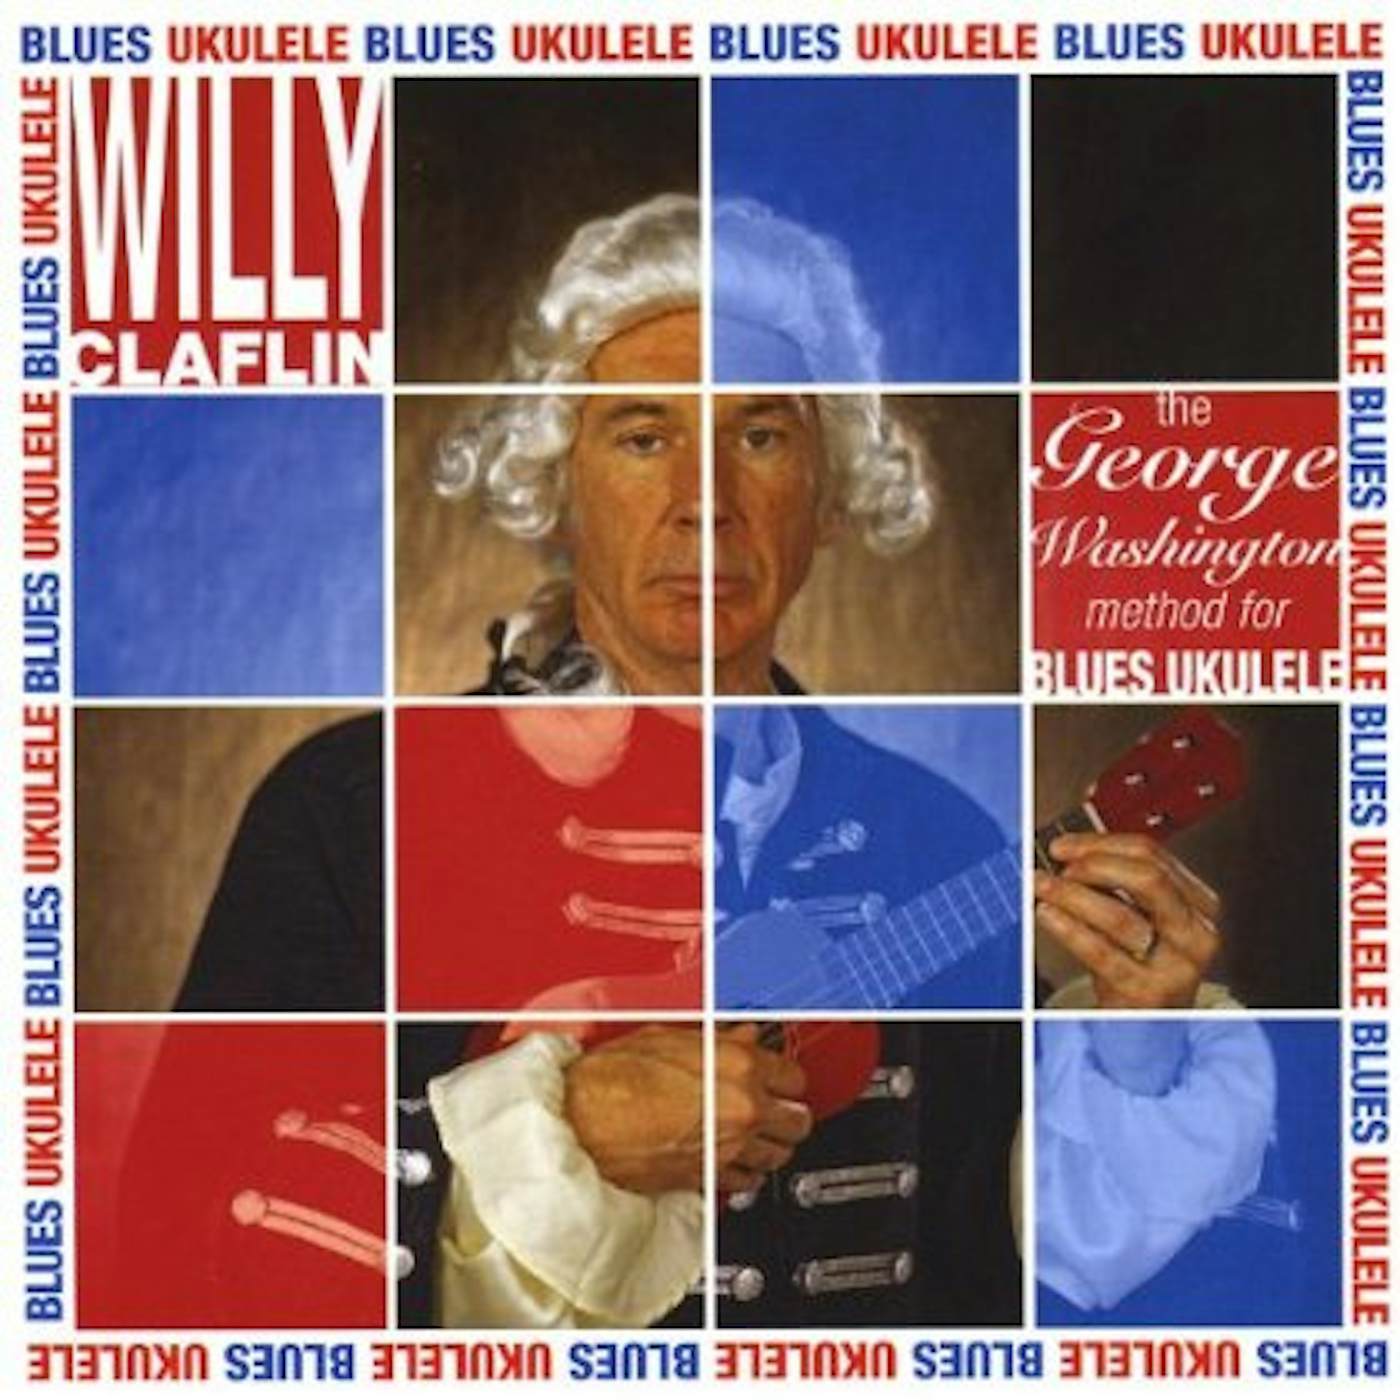 Willy Claflin GEORGE WASHINGTON METHOD FOR THE BLUES UKELELE CD